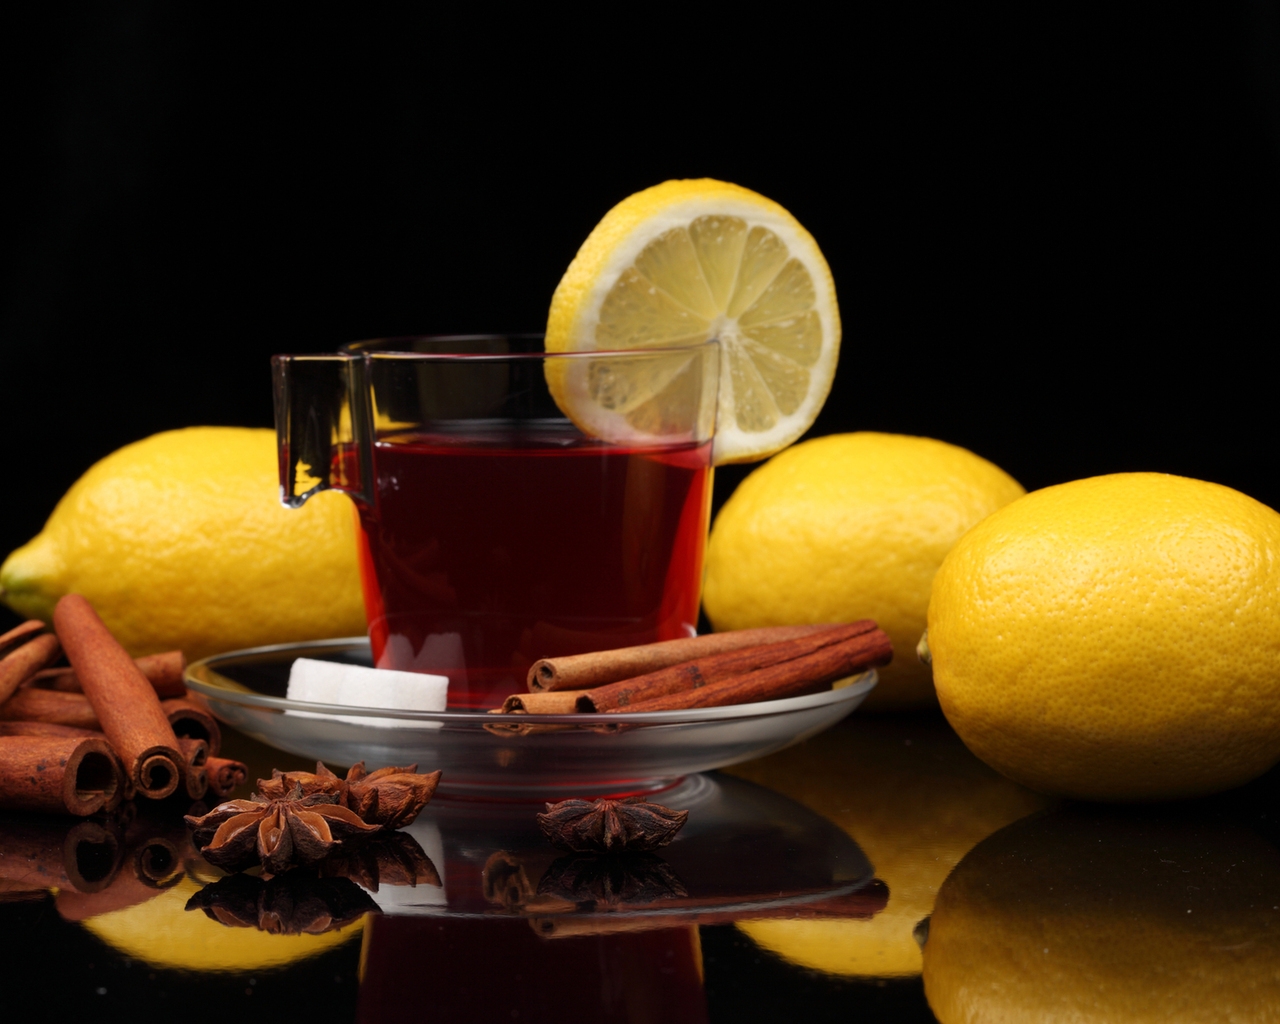 Cinnamon And Lemon Tea for 1280 x 1024 resolution